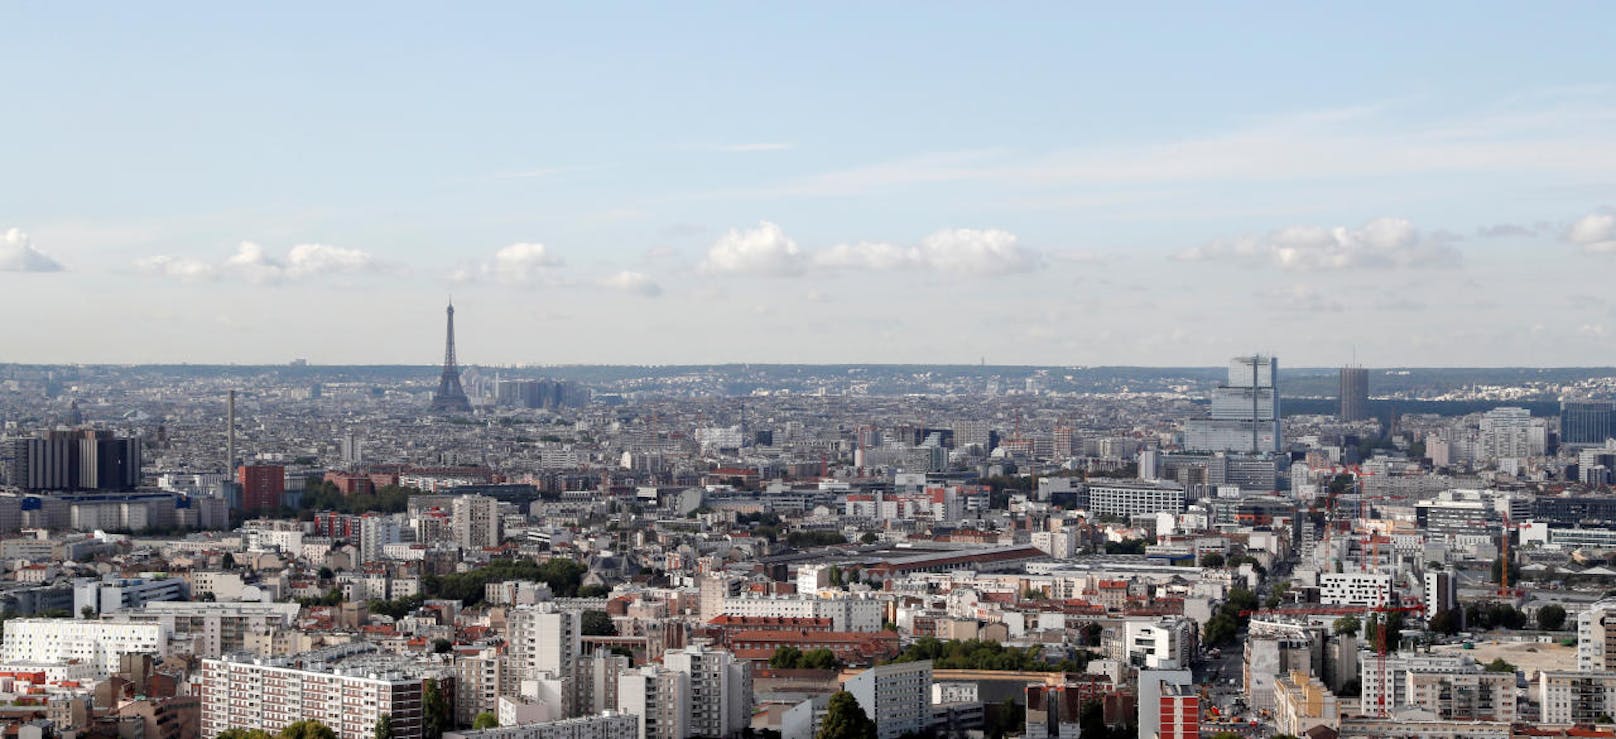 Der Eiffelturm ist das weithin sichtbare Wahrzeichen der französischen Hauptstadt Paris.